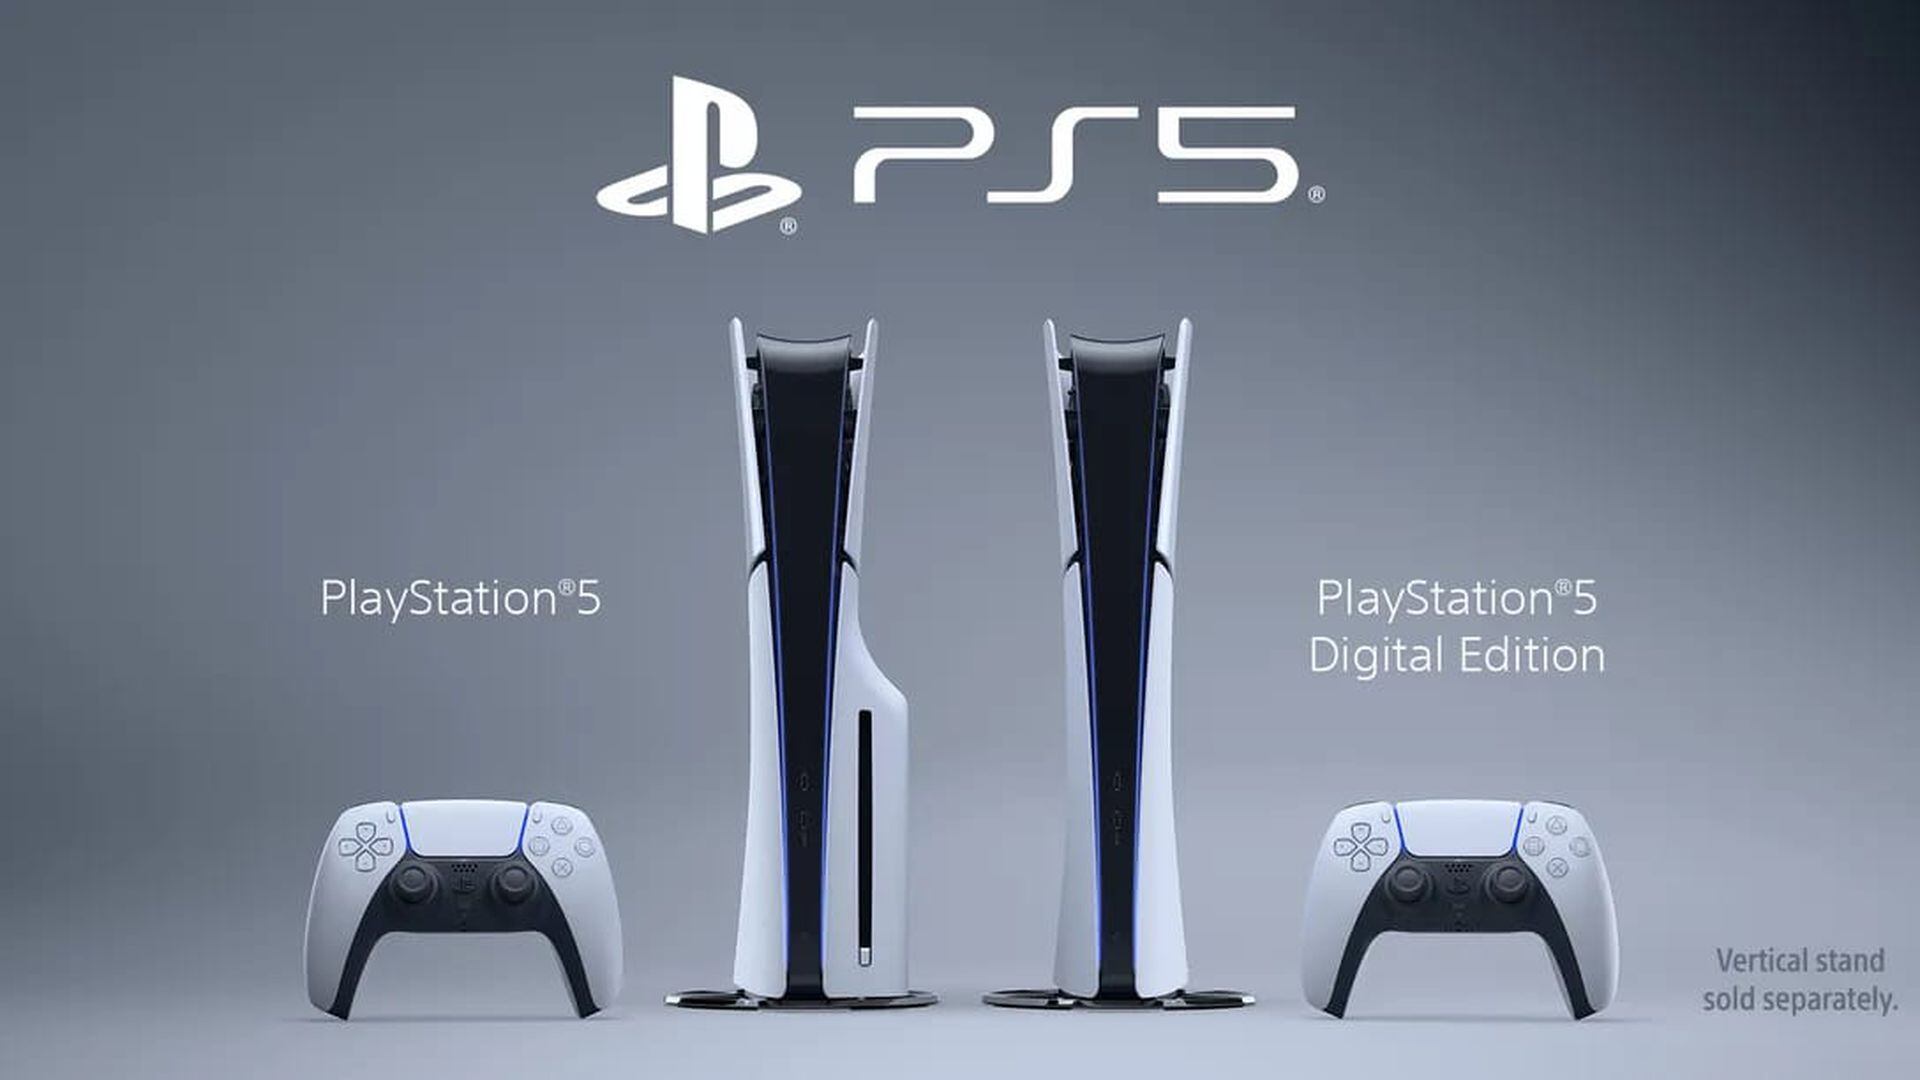 Sony confirma su consola portátil PlayStation Portal y los